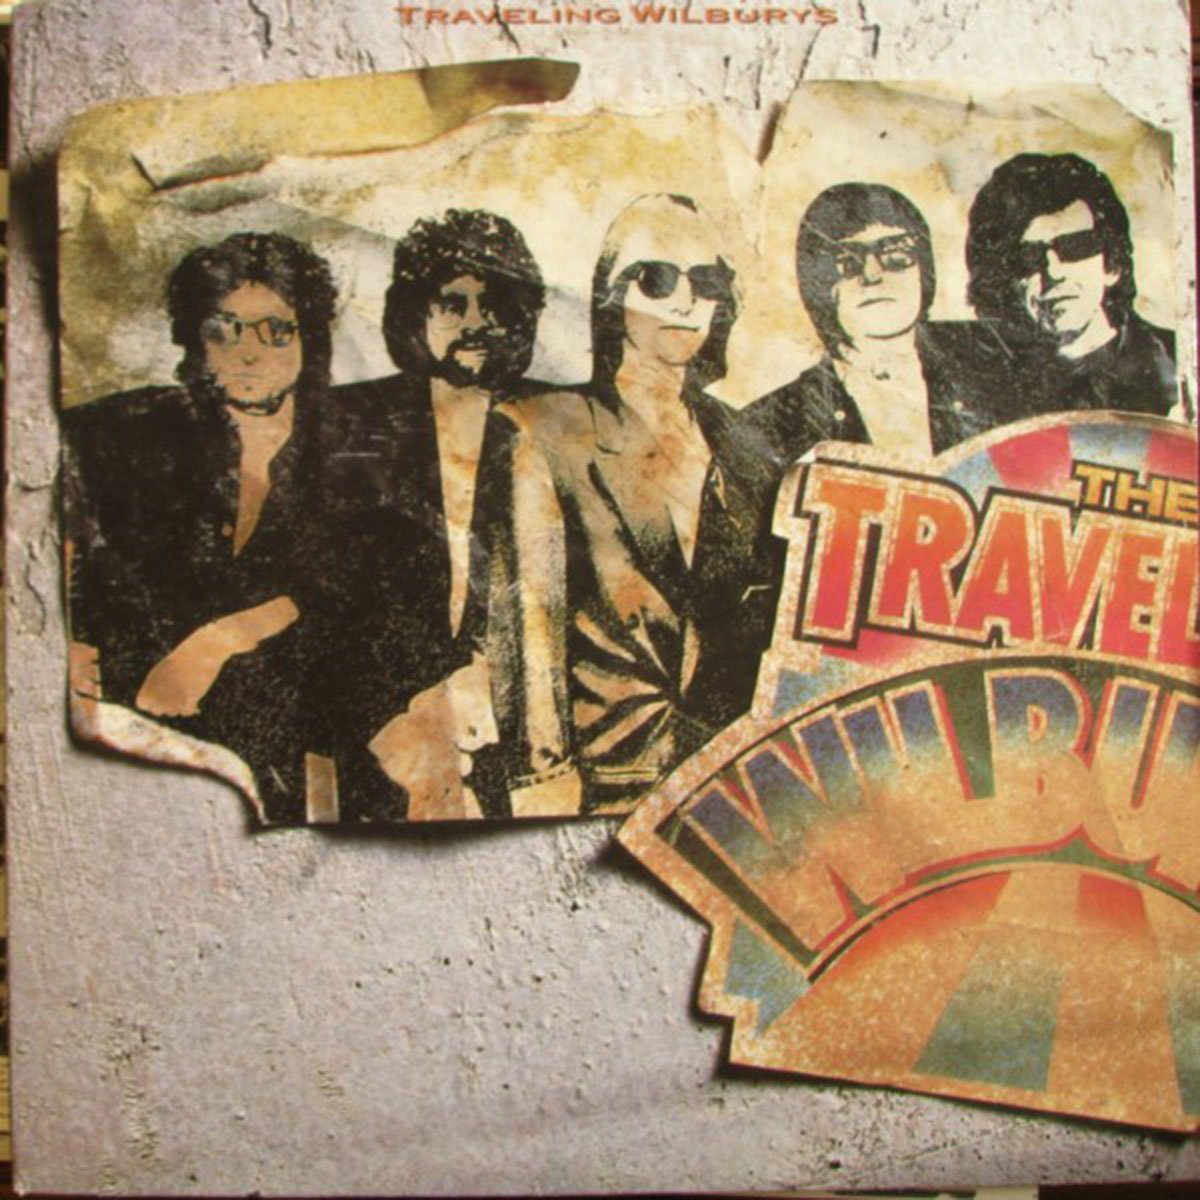 Traveling Wilburys – Volume One - 1988